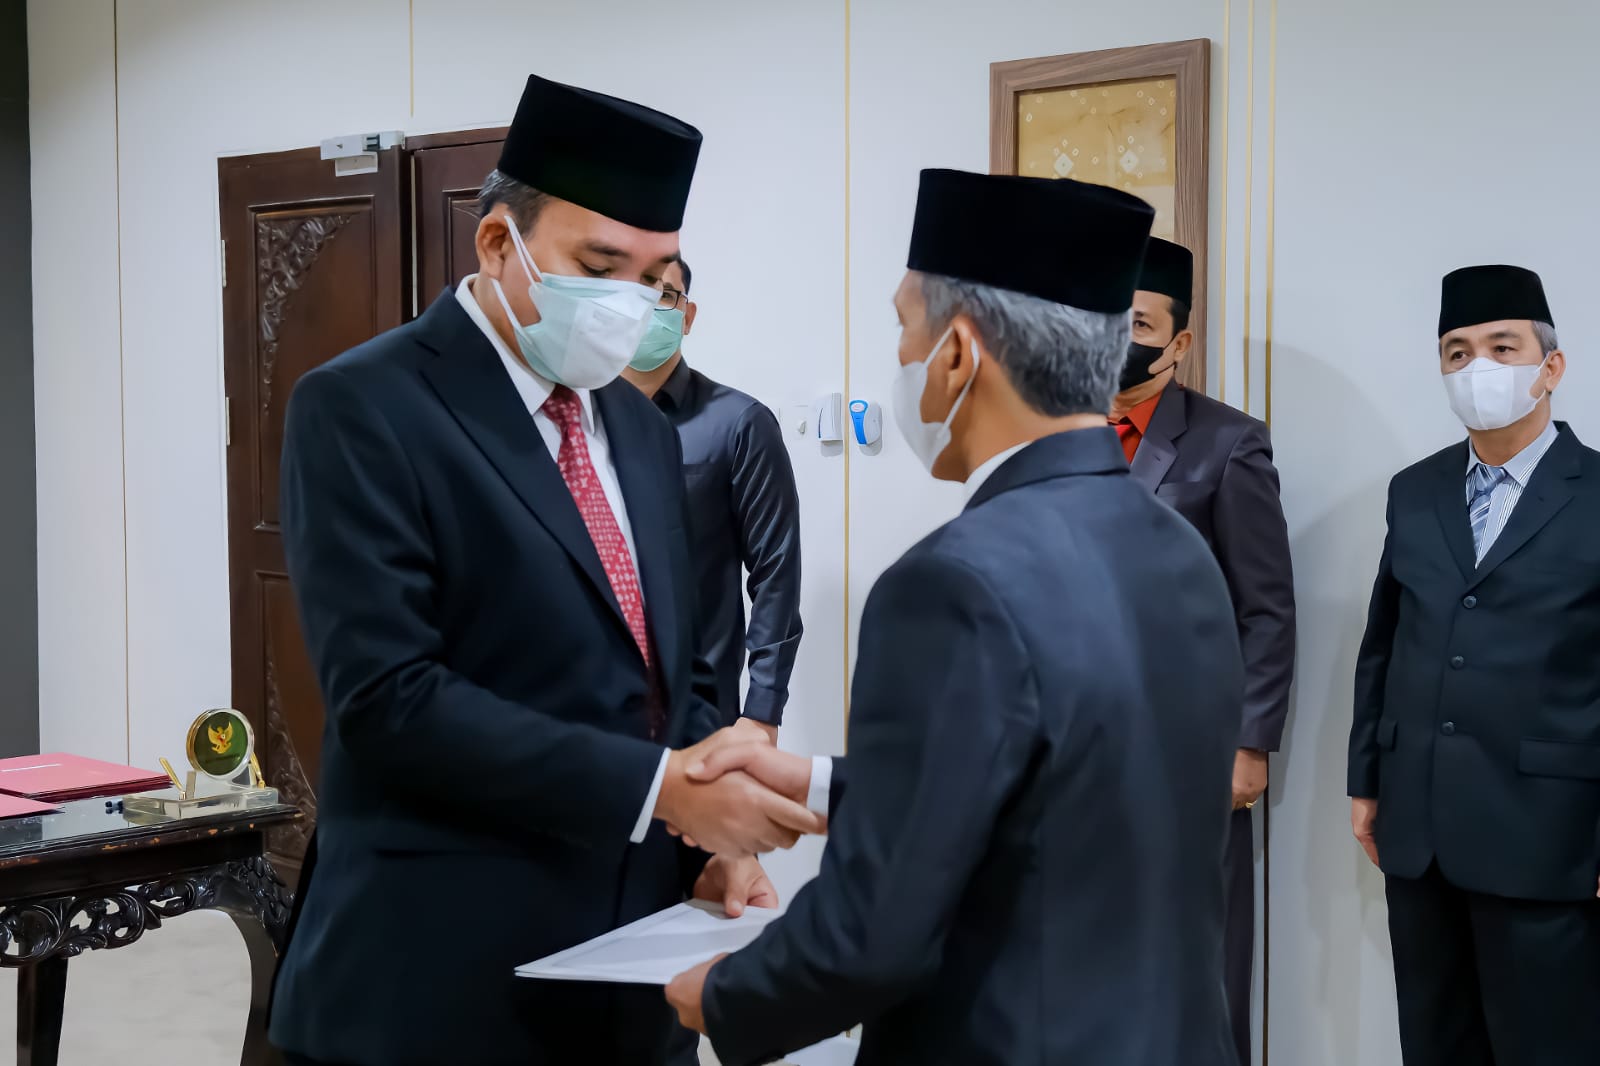 Plt Bupati Beni Lantik dan Sumpah Pejabat, Sekretaris DPRD Dimutasi Jadi Staf Ahli